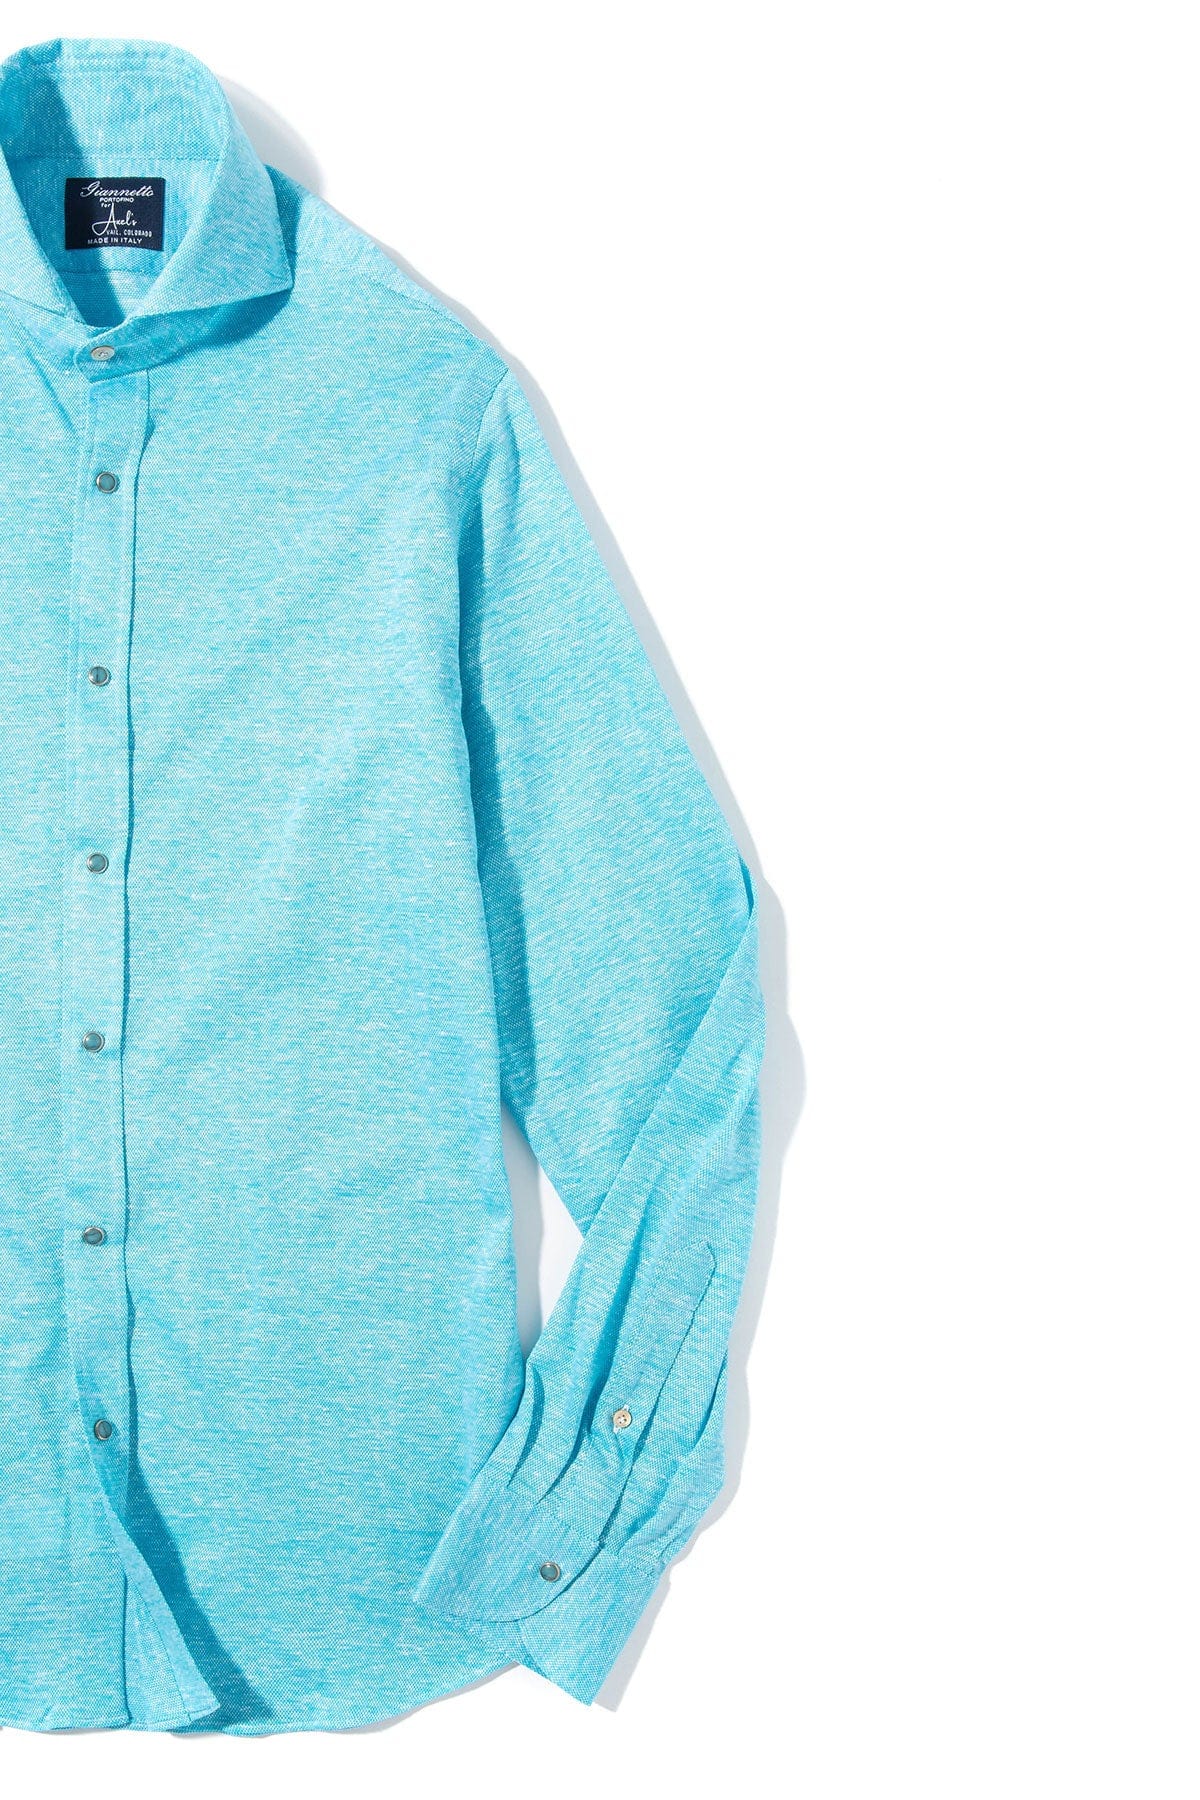 Schwinn Cotton Linen Shirt in Turquoise - AXEL'S